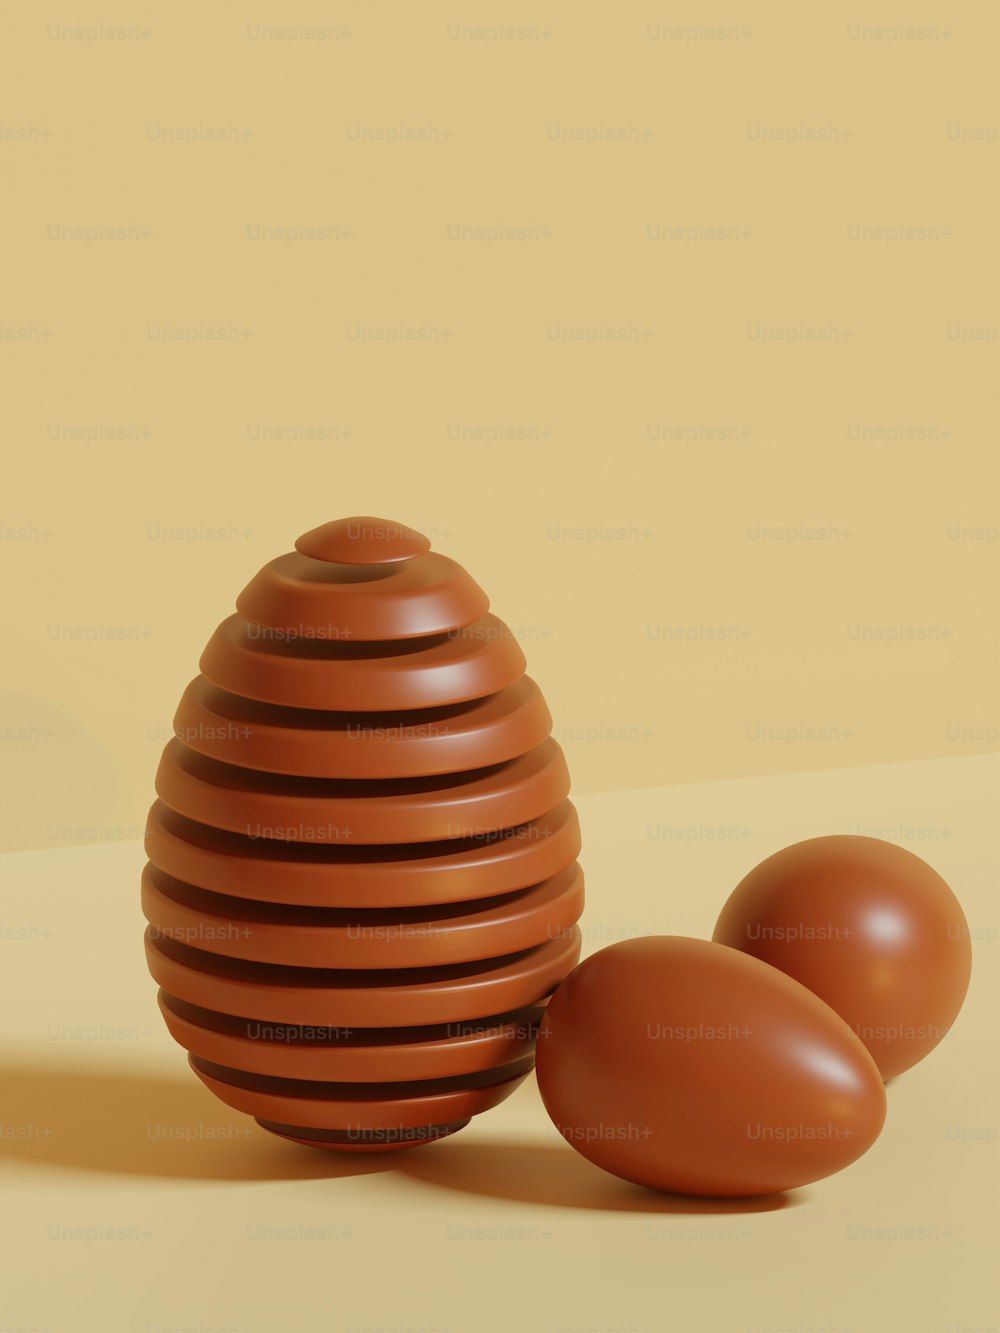 2つの茶色の卵の隣に座っている茶色の花瓶